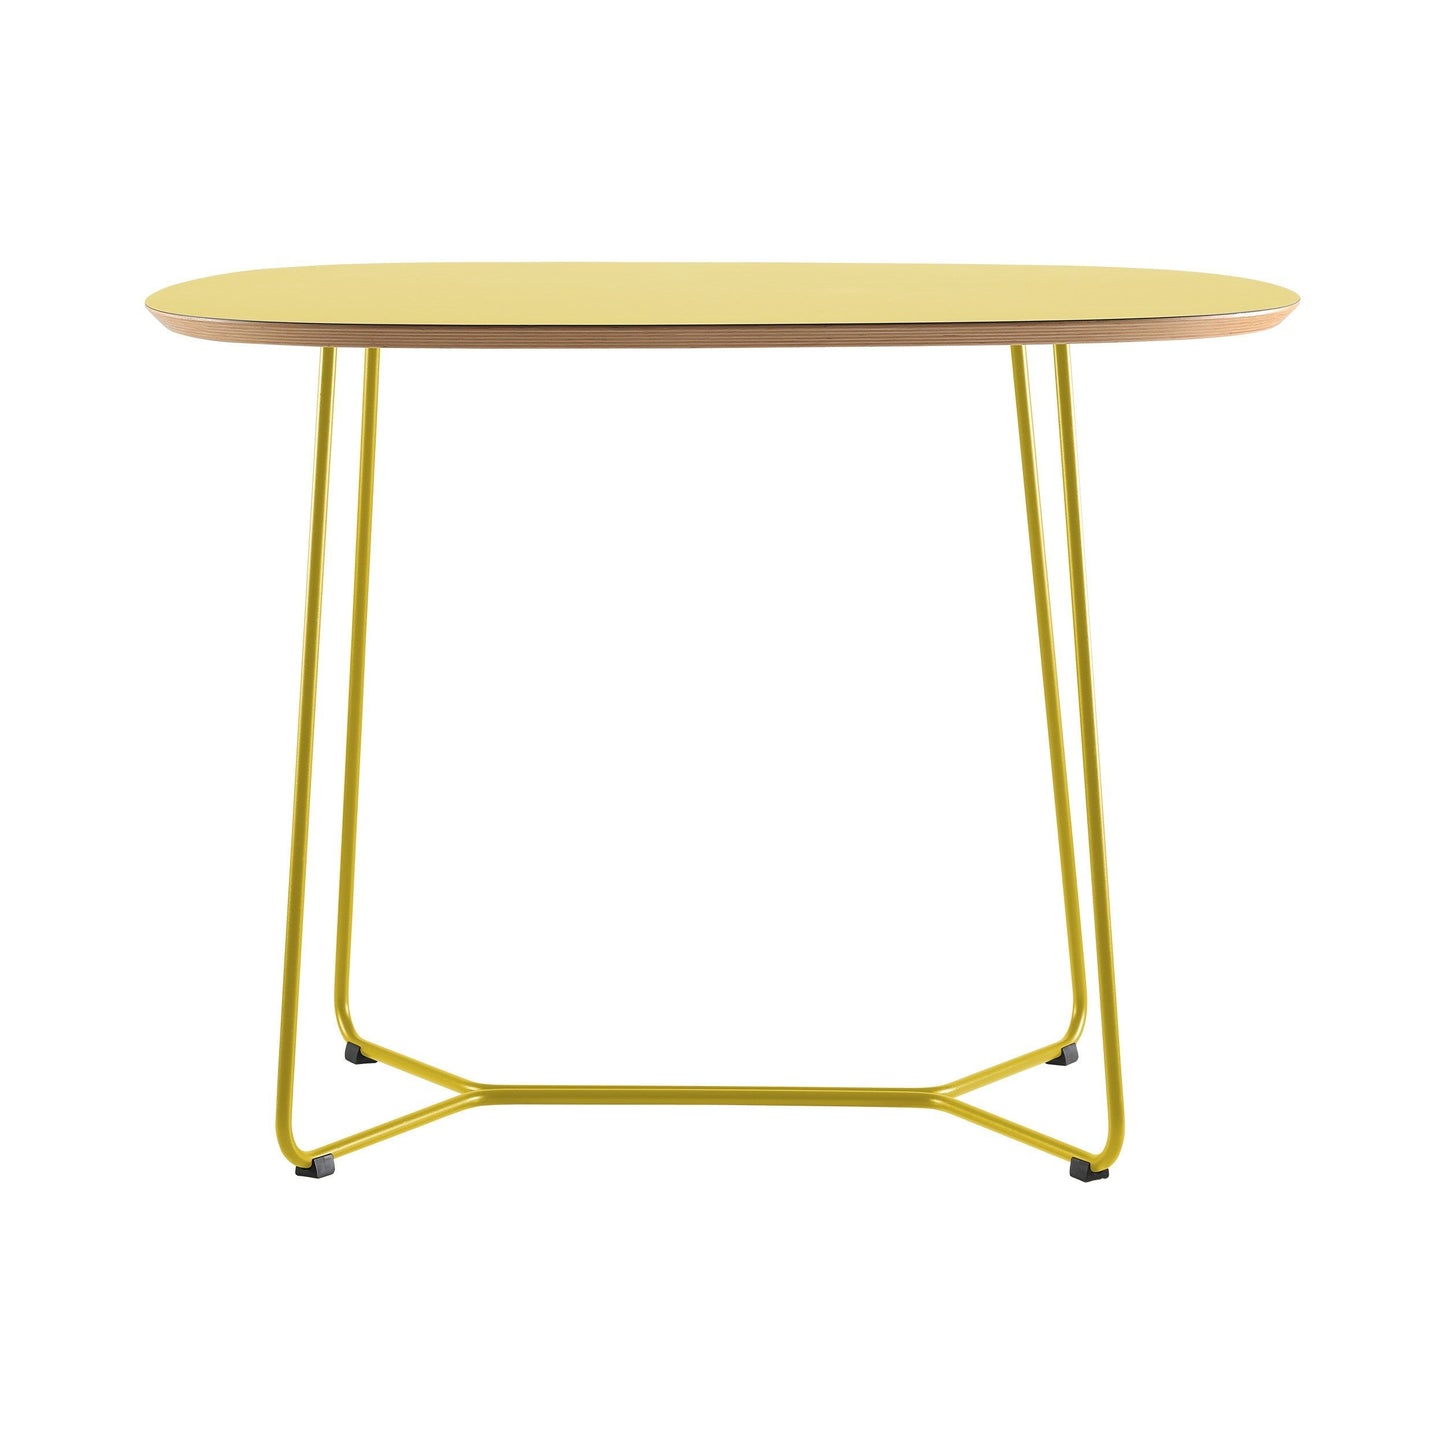 Stół Maple M05 - Żółty